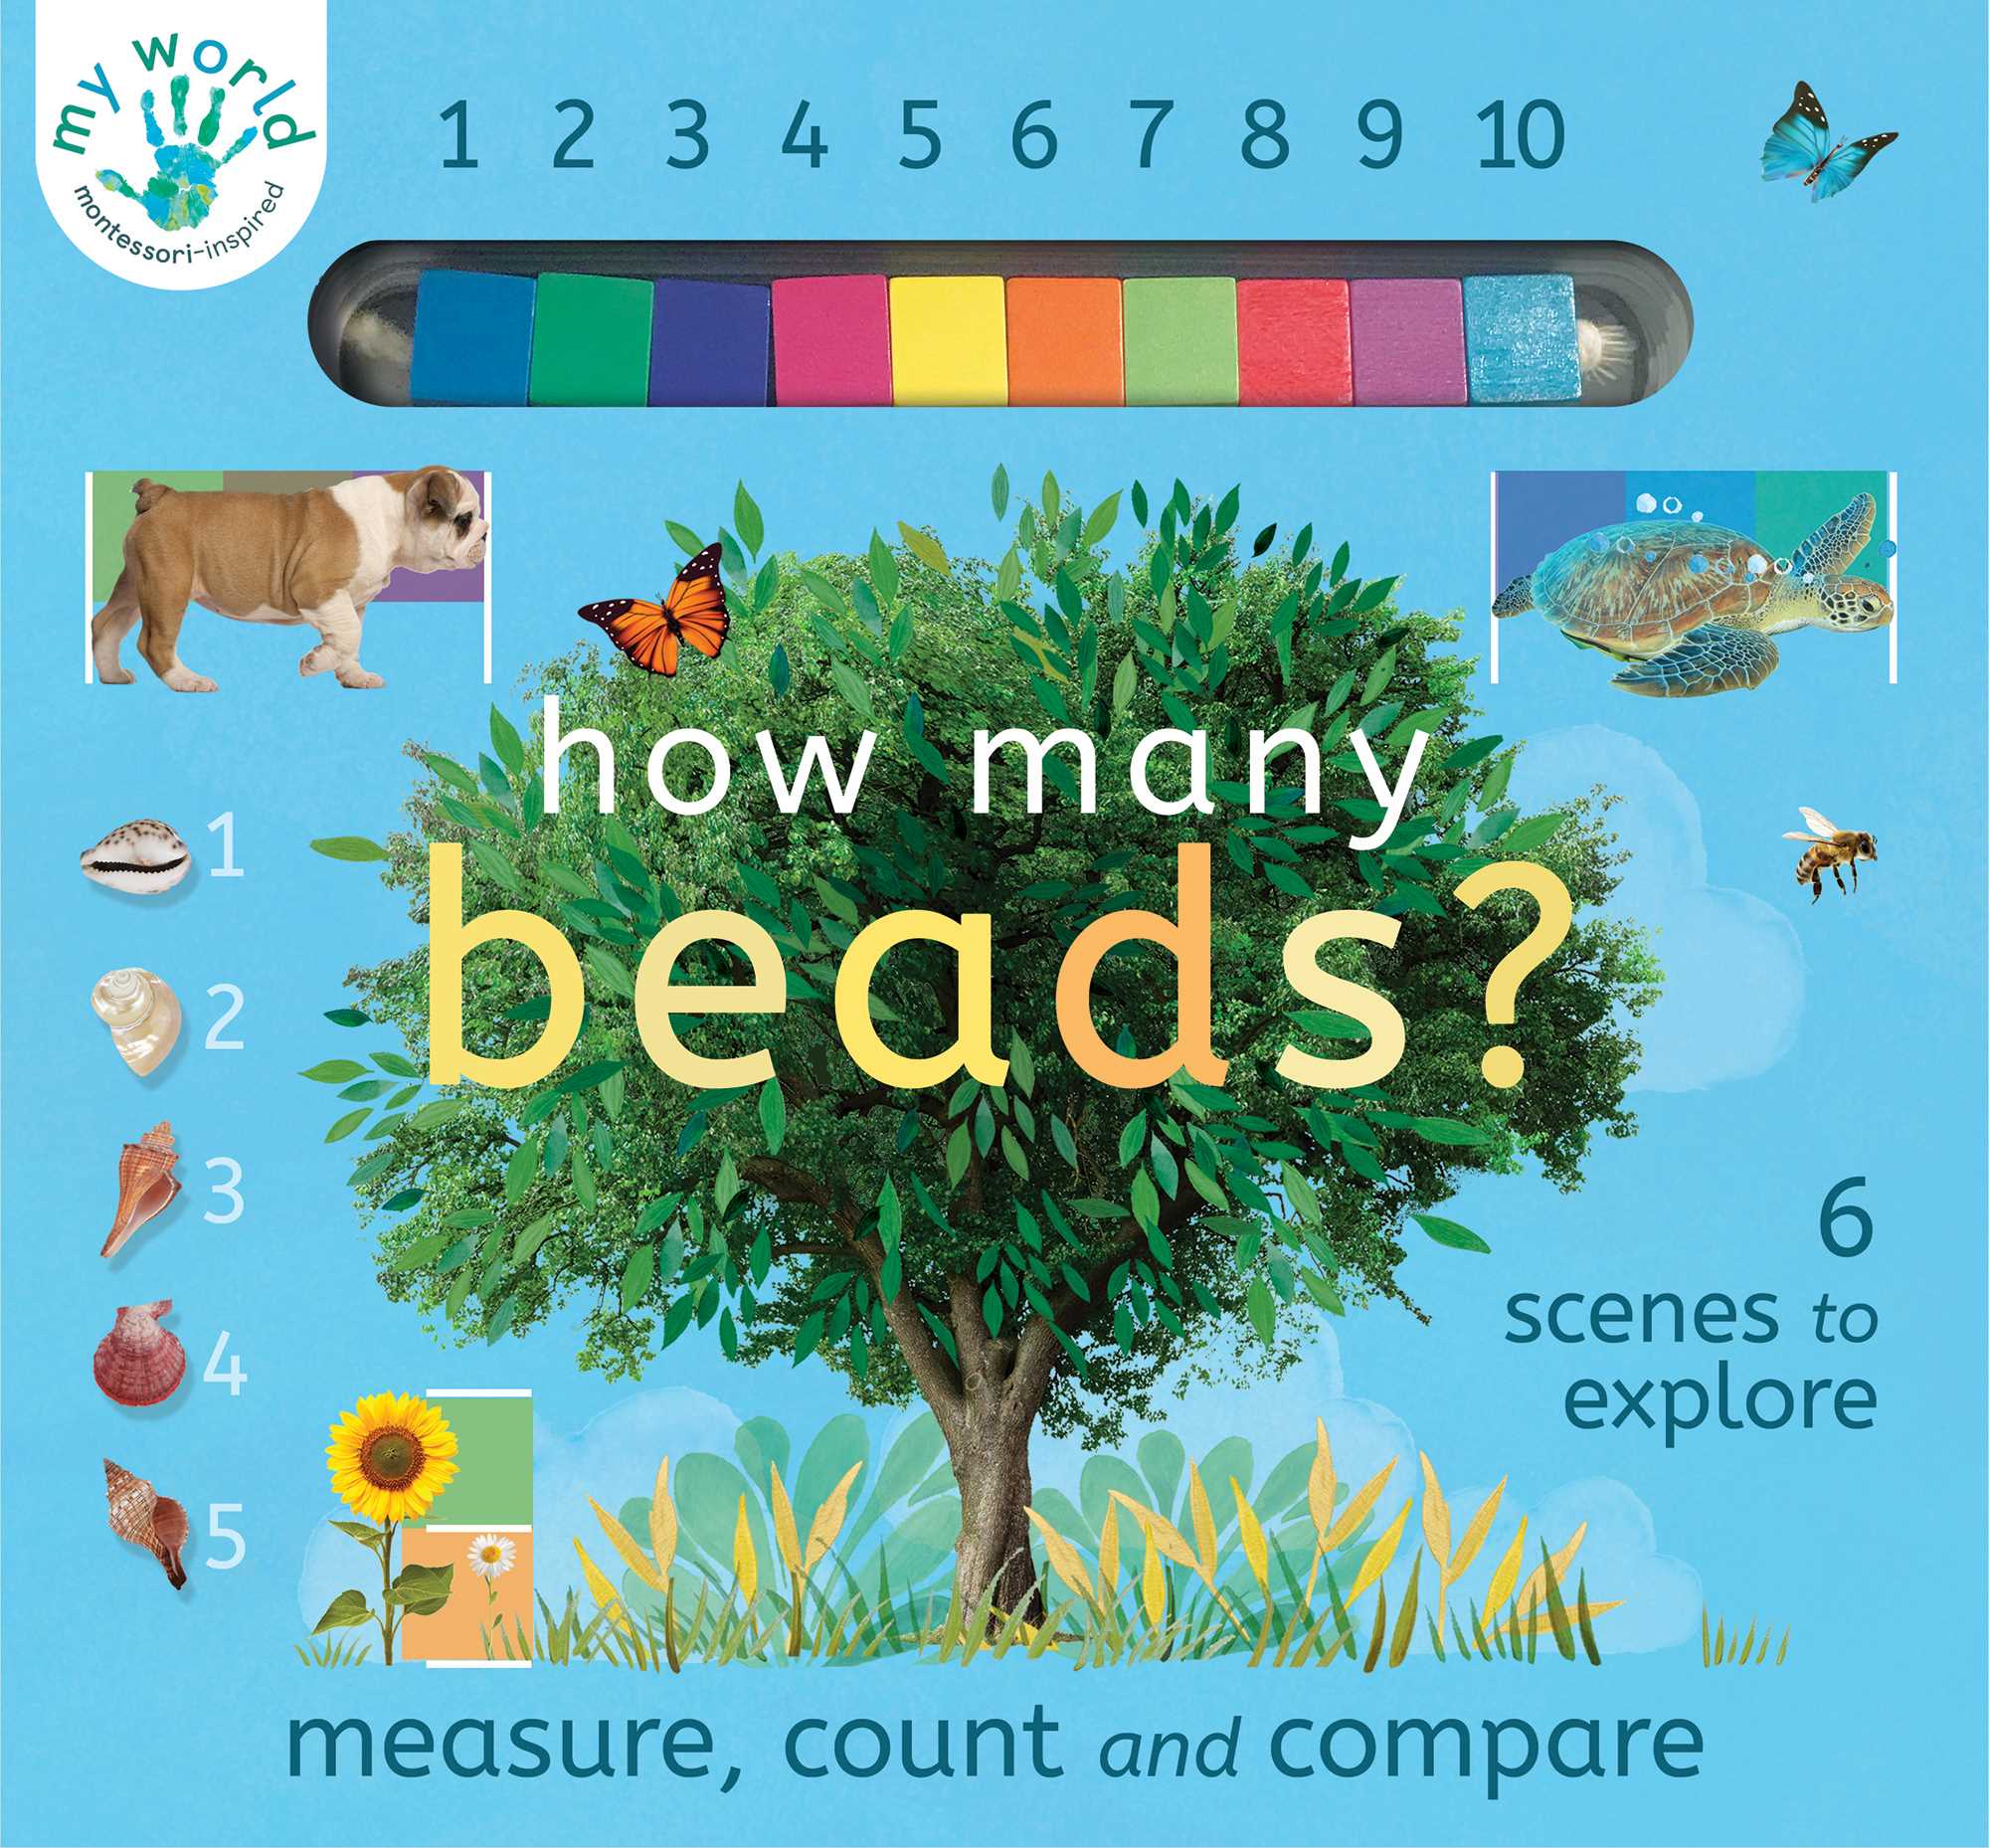 My World: How Many Beads?